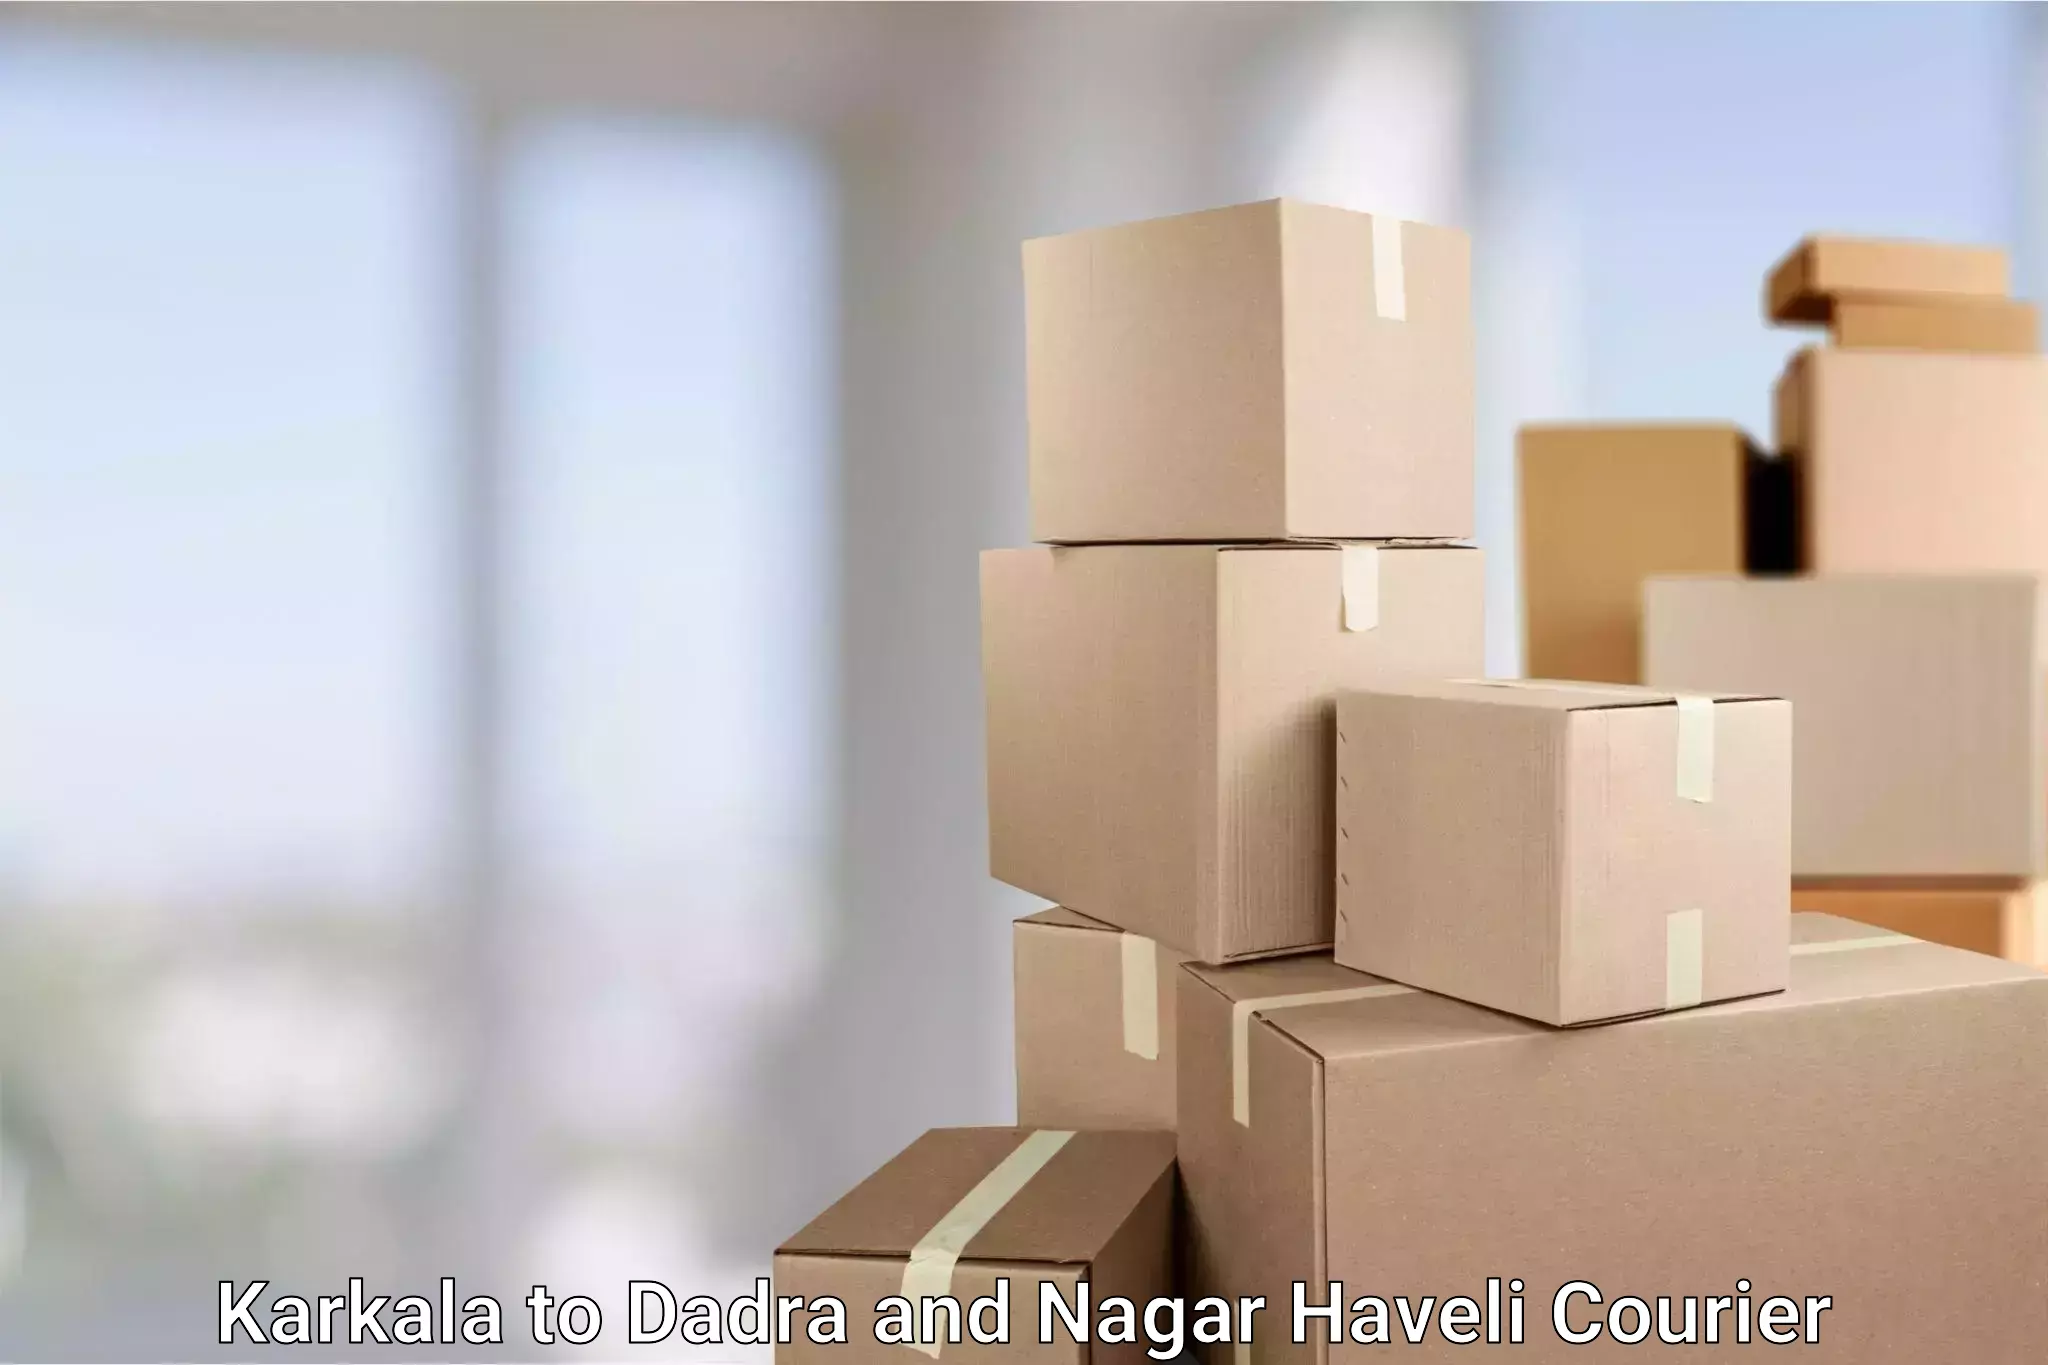 Small business couriers Karkala to Dadra and Nagar Haveli